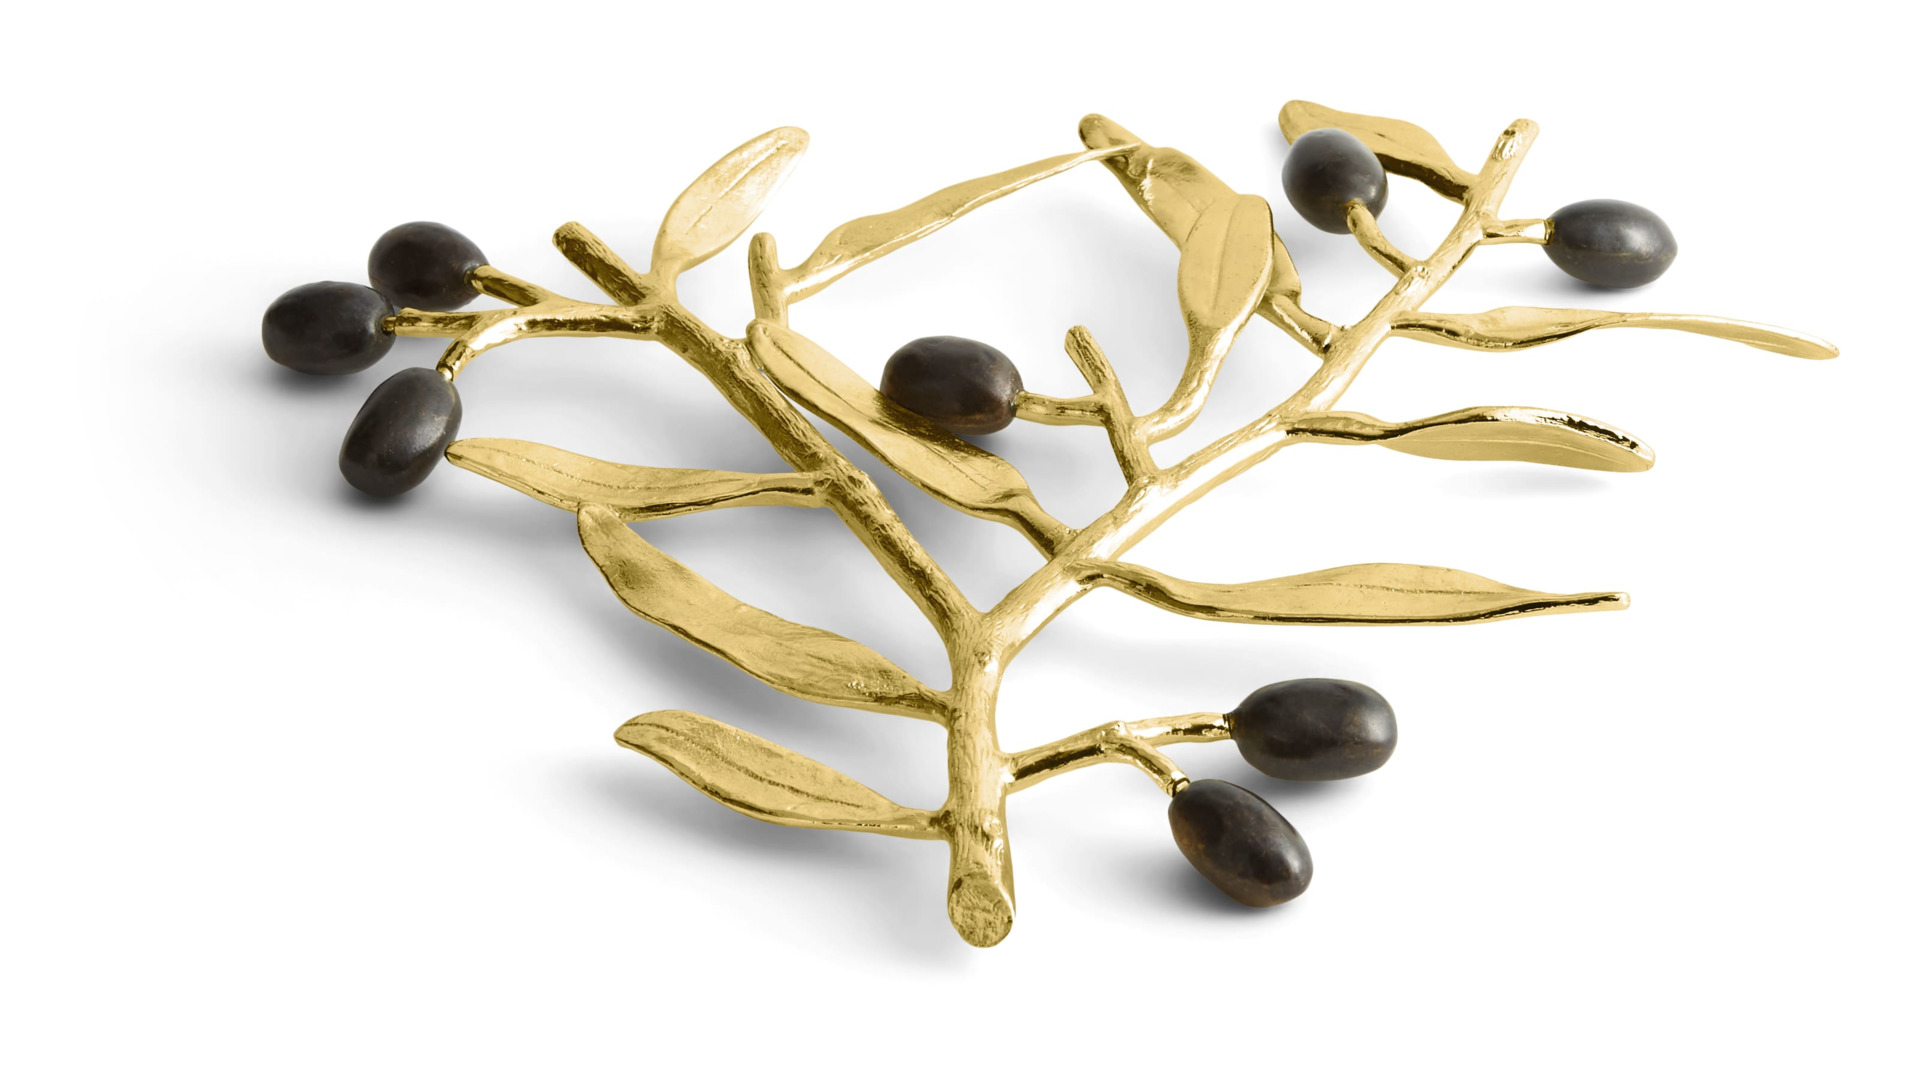 Подставка под горячее Michael Aram Золотая оливковая ветвь 25,5 см